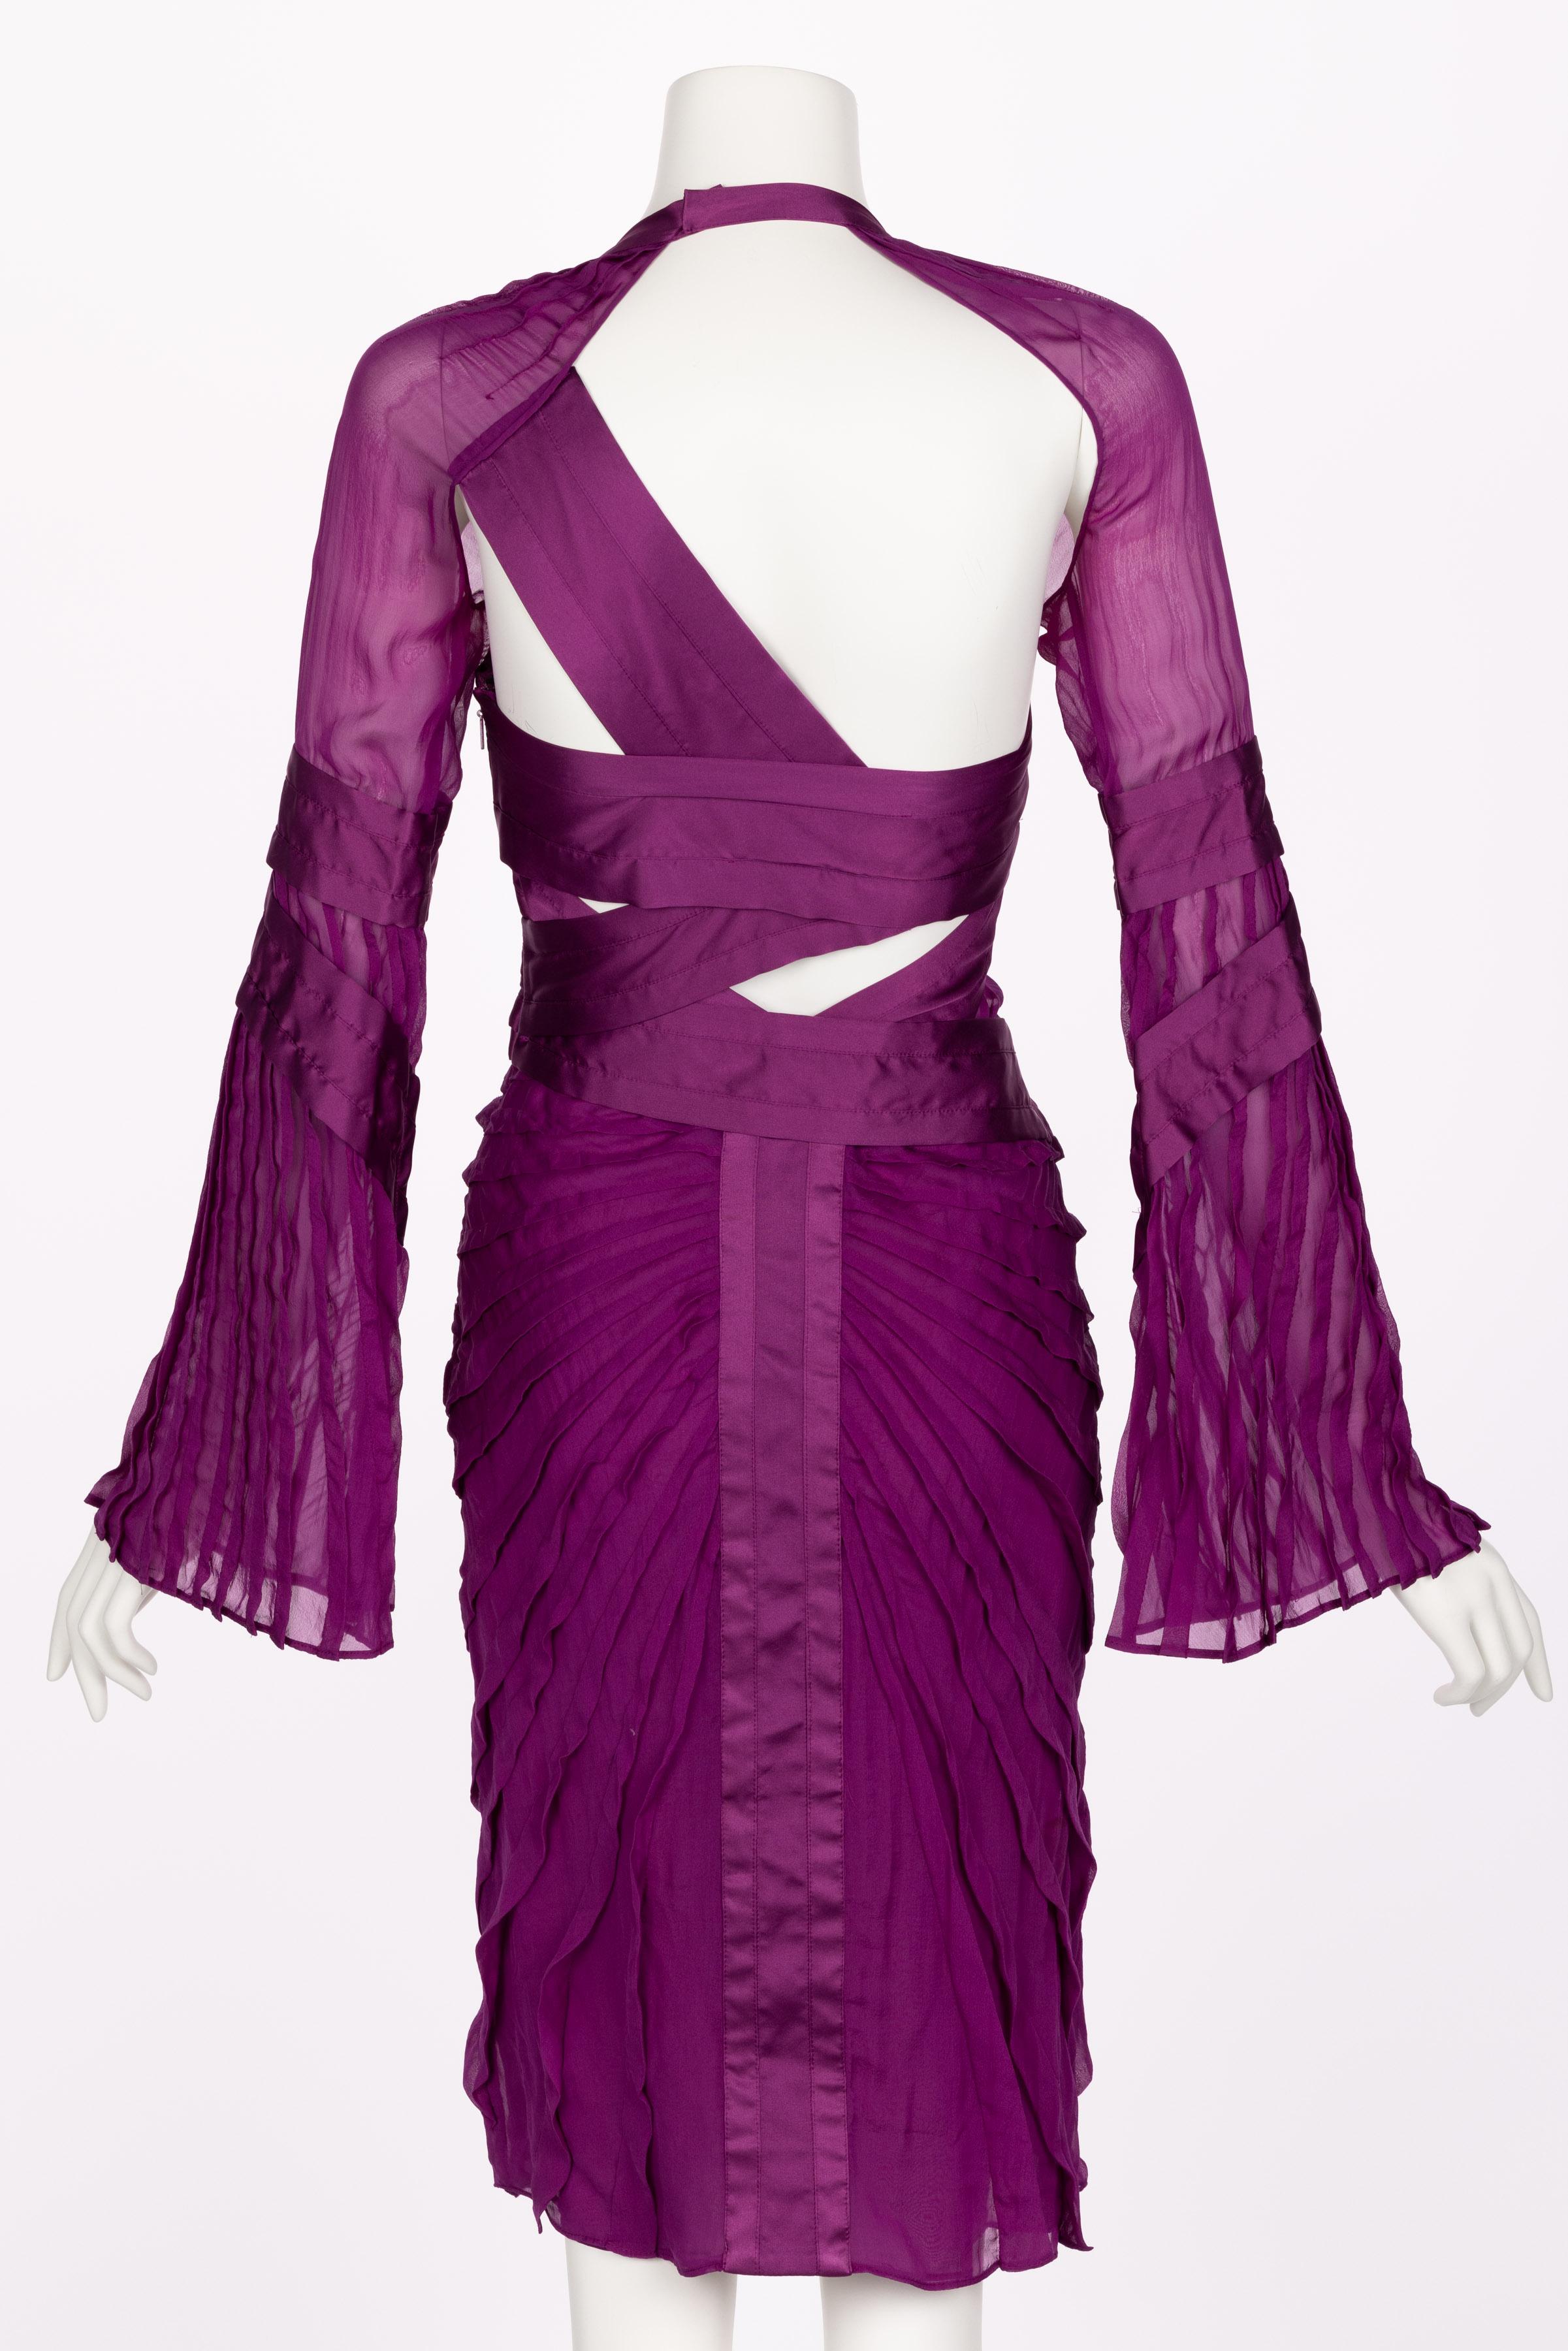 Gucci Tom Ford Purple Silk Dress Runway F/W 2004 Look #27 1